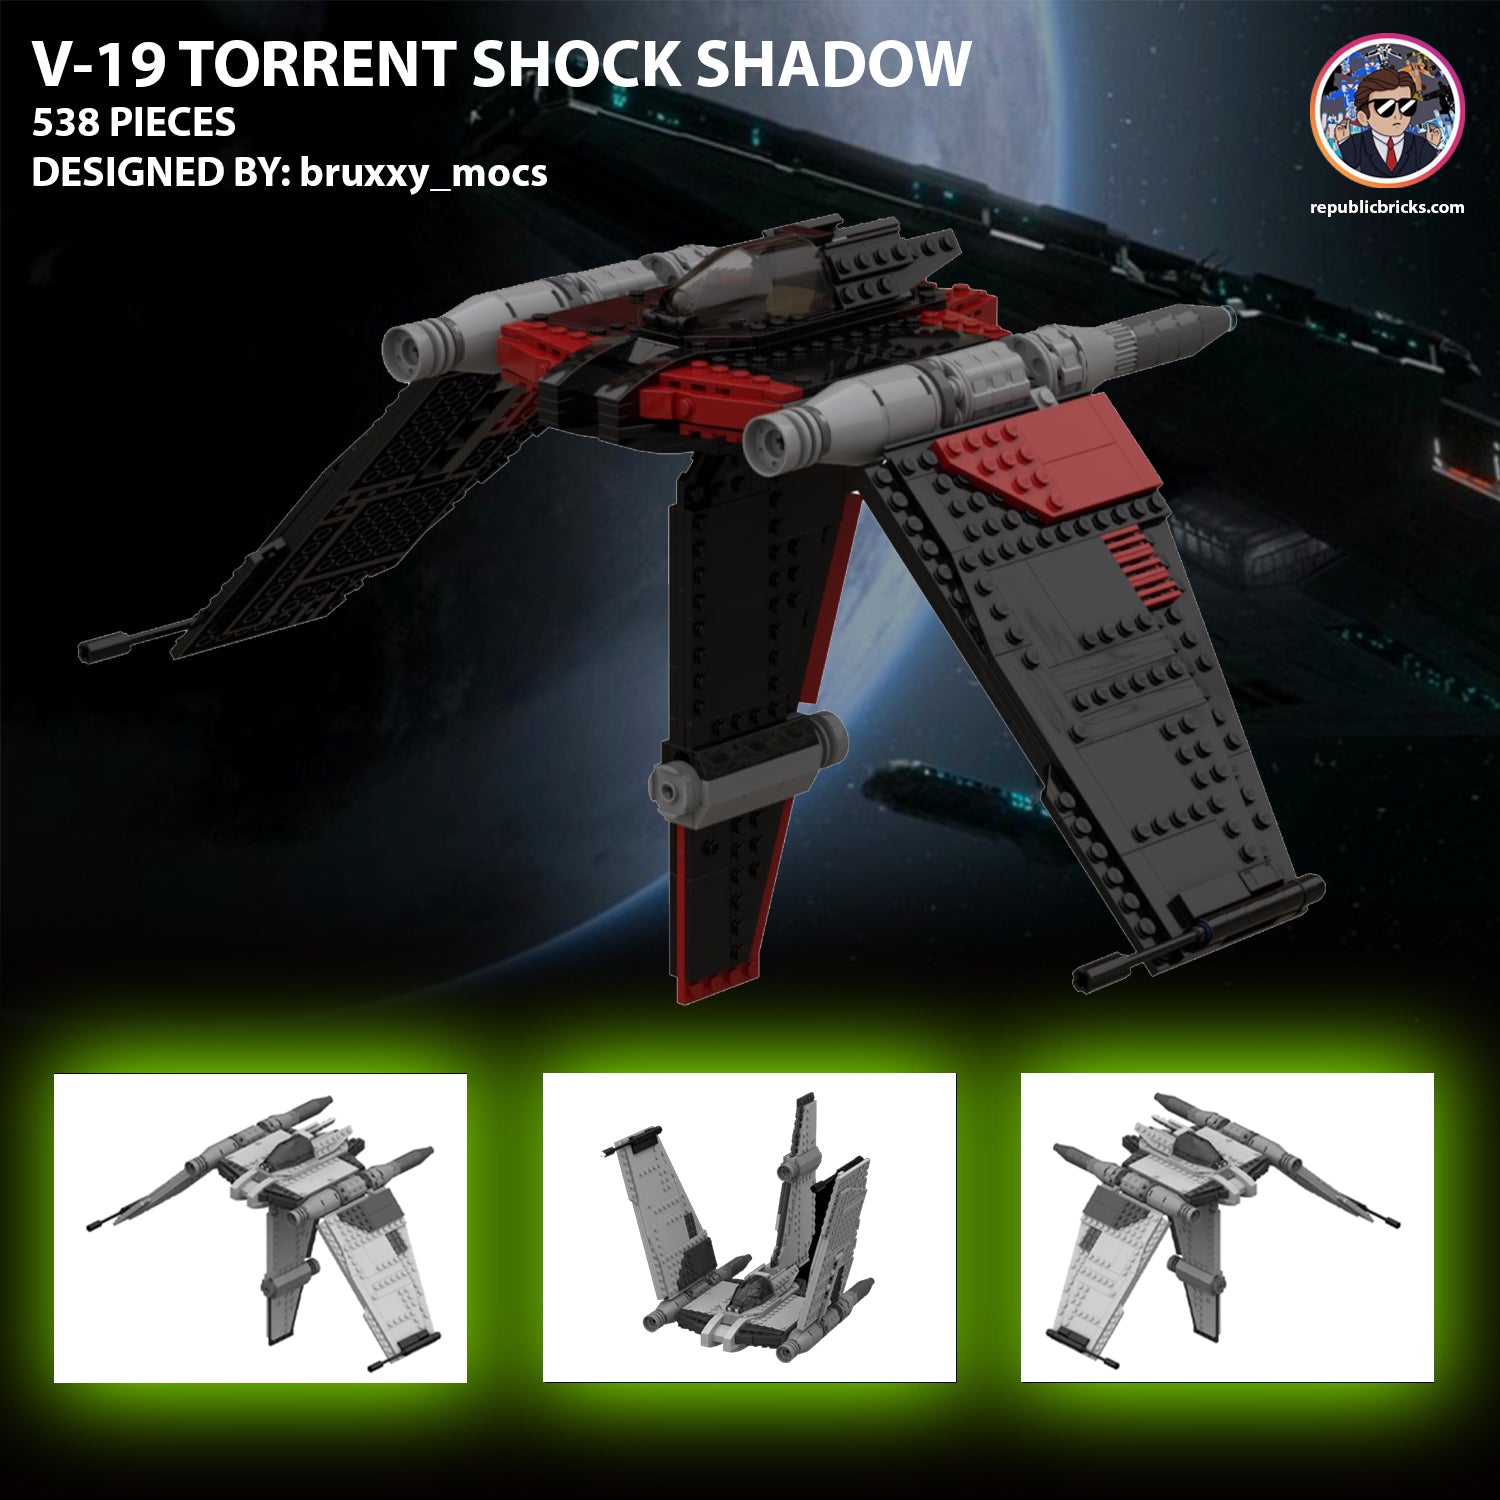 15617: V-19 TORRENT V3 (SHADOW SHOCK)